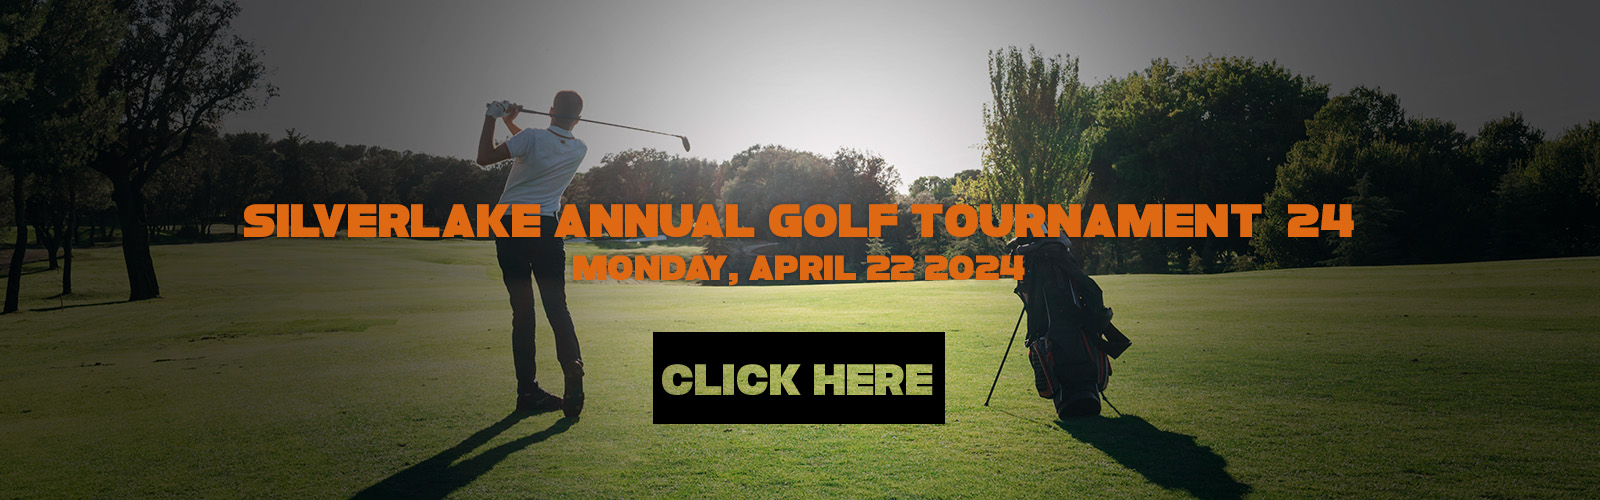 Golf Tournament Web Banner